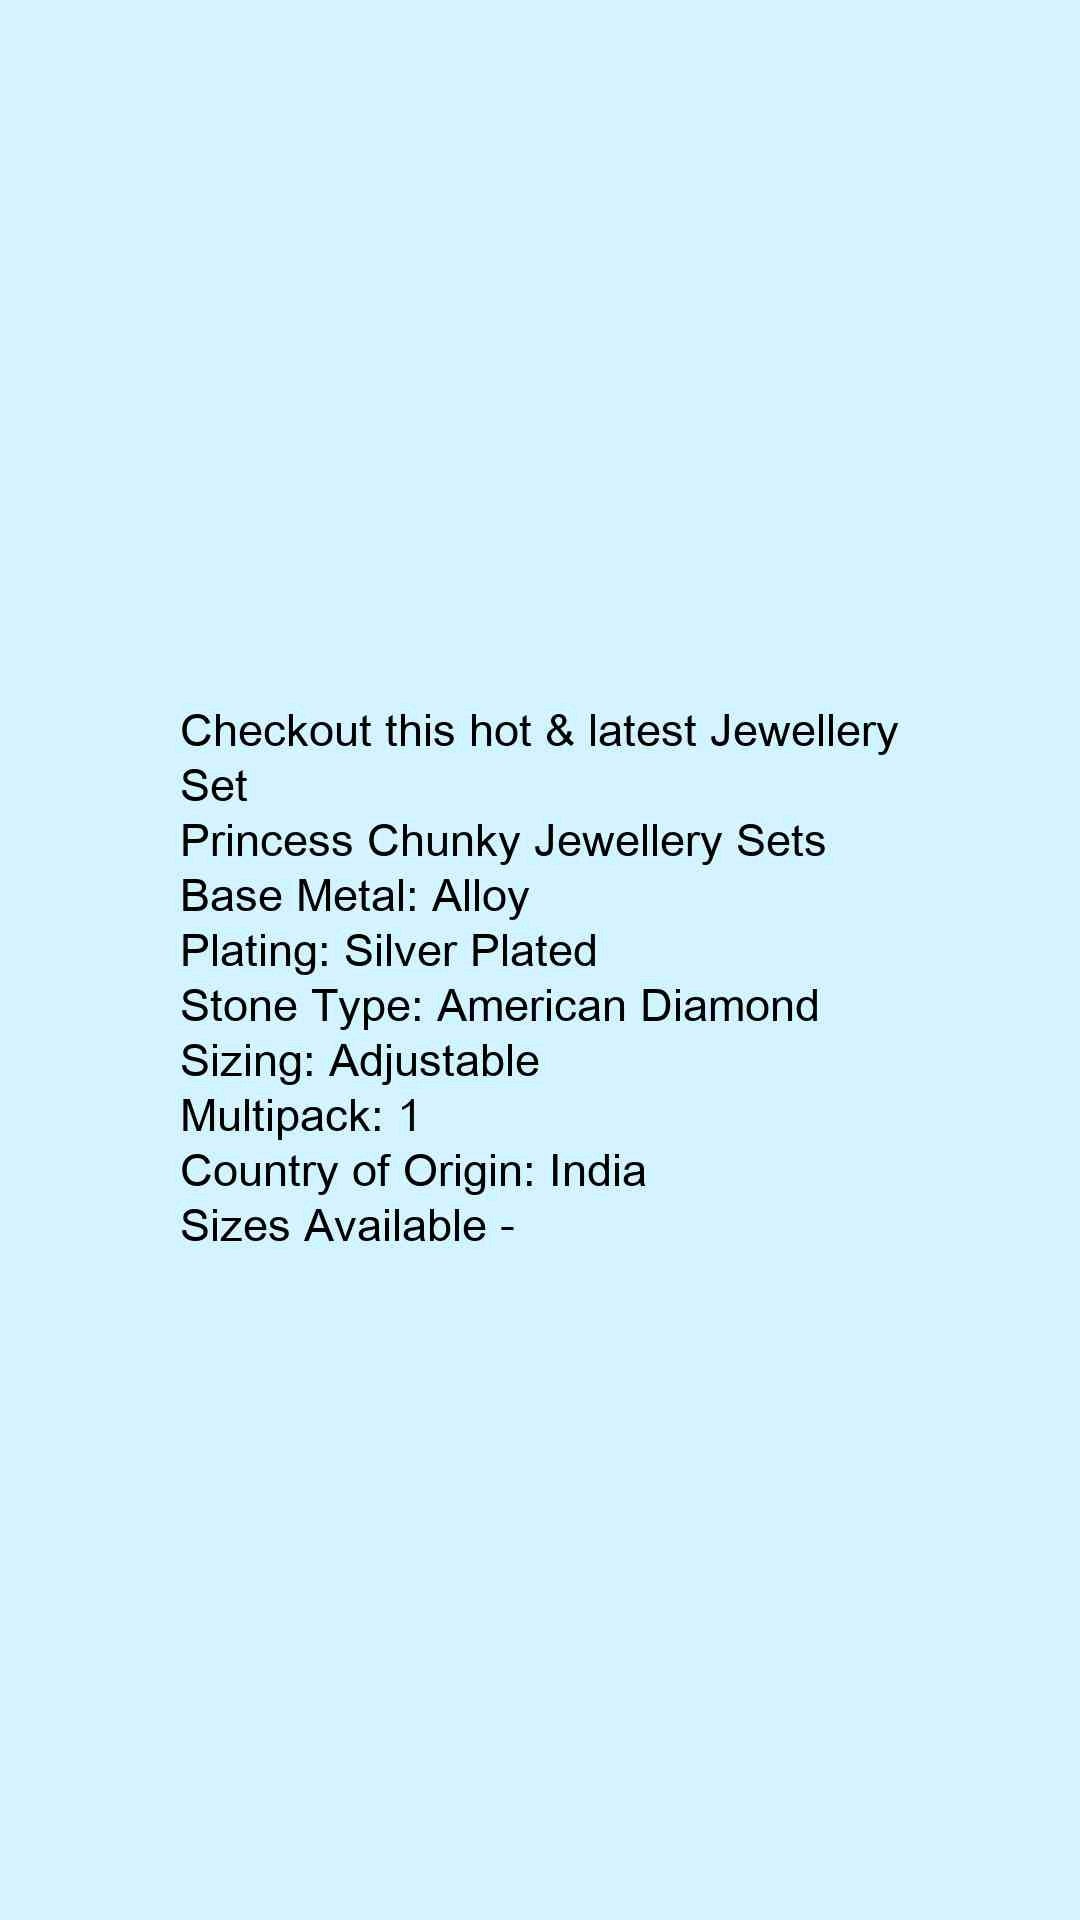 Princess Chunky Jewellery Sets